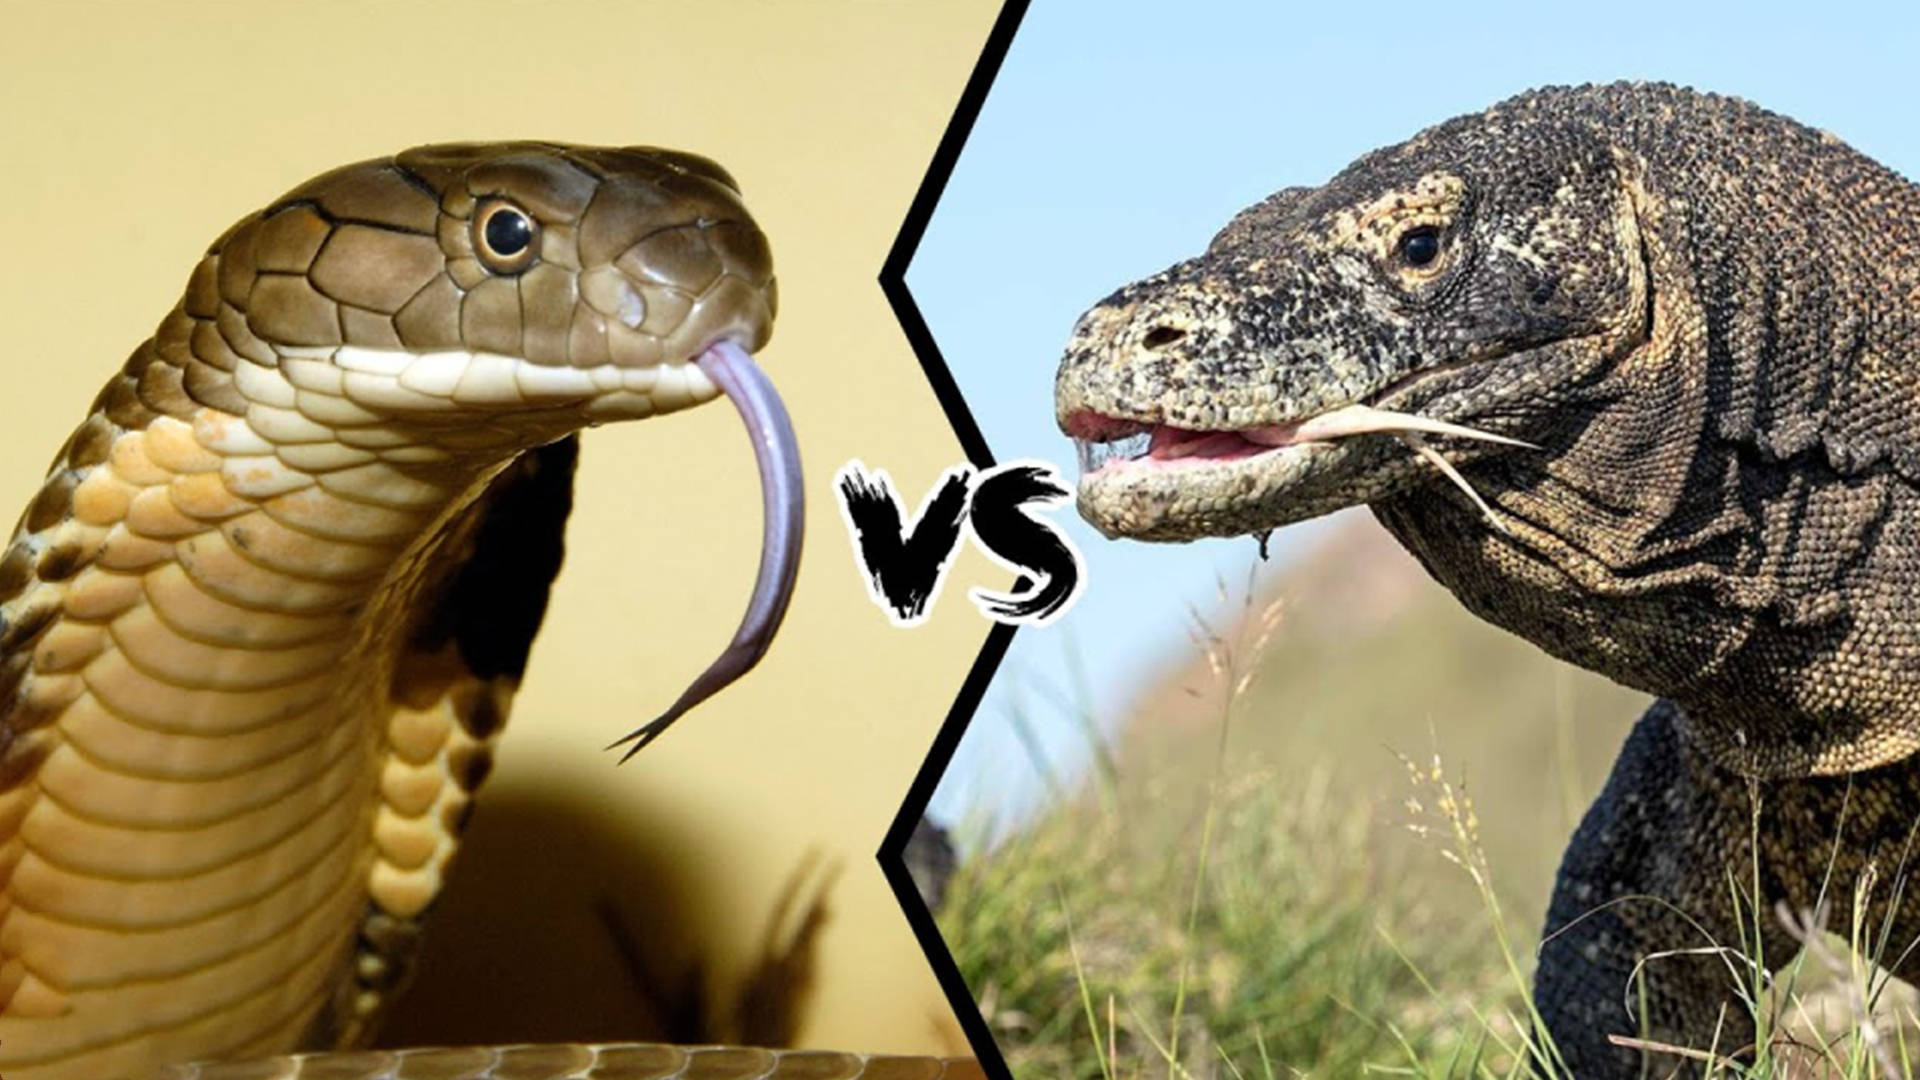 Anaconda Largest Snake Ever Found